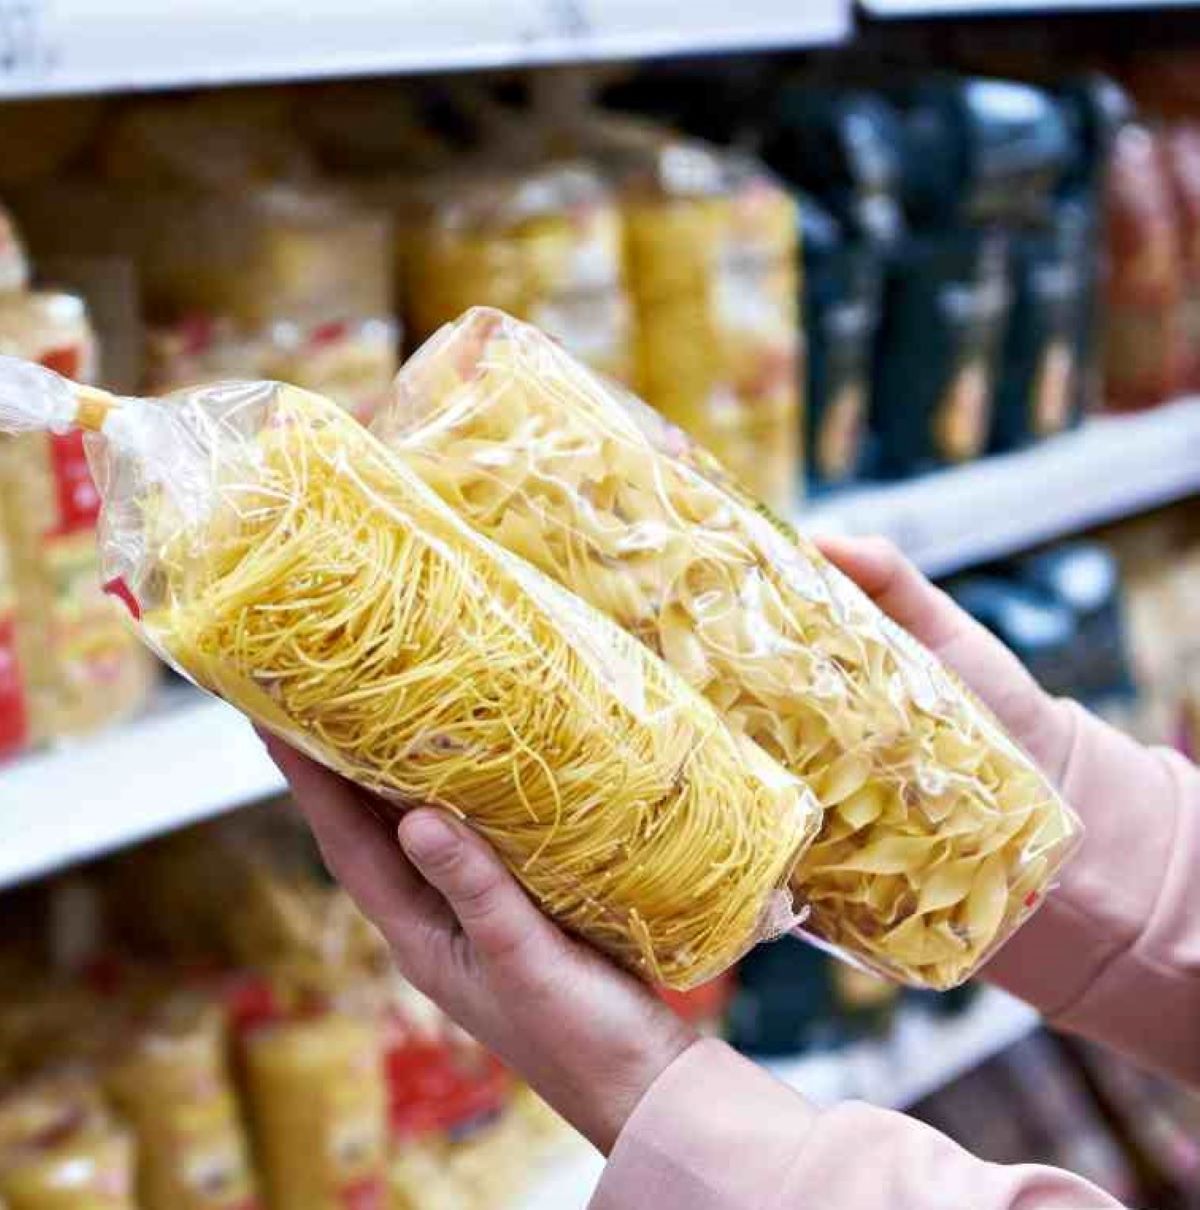 Pasta ritirata dai supermercati per “rischio presenza di allergeni”: marca e lotto